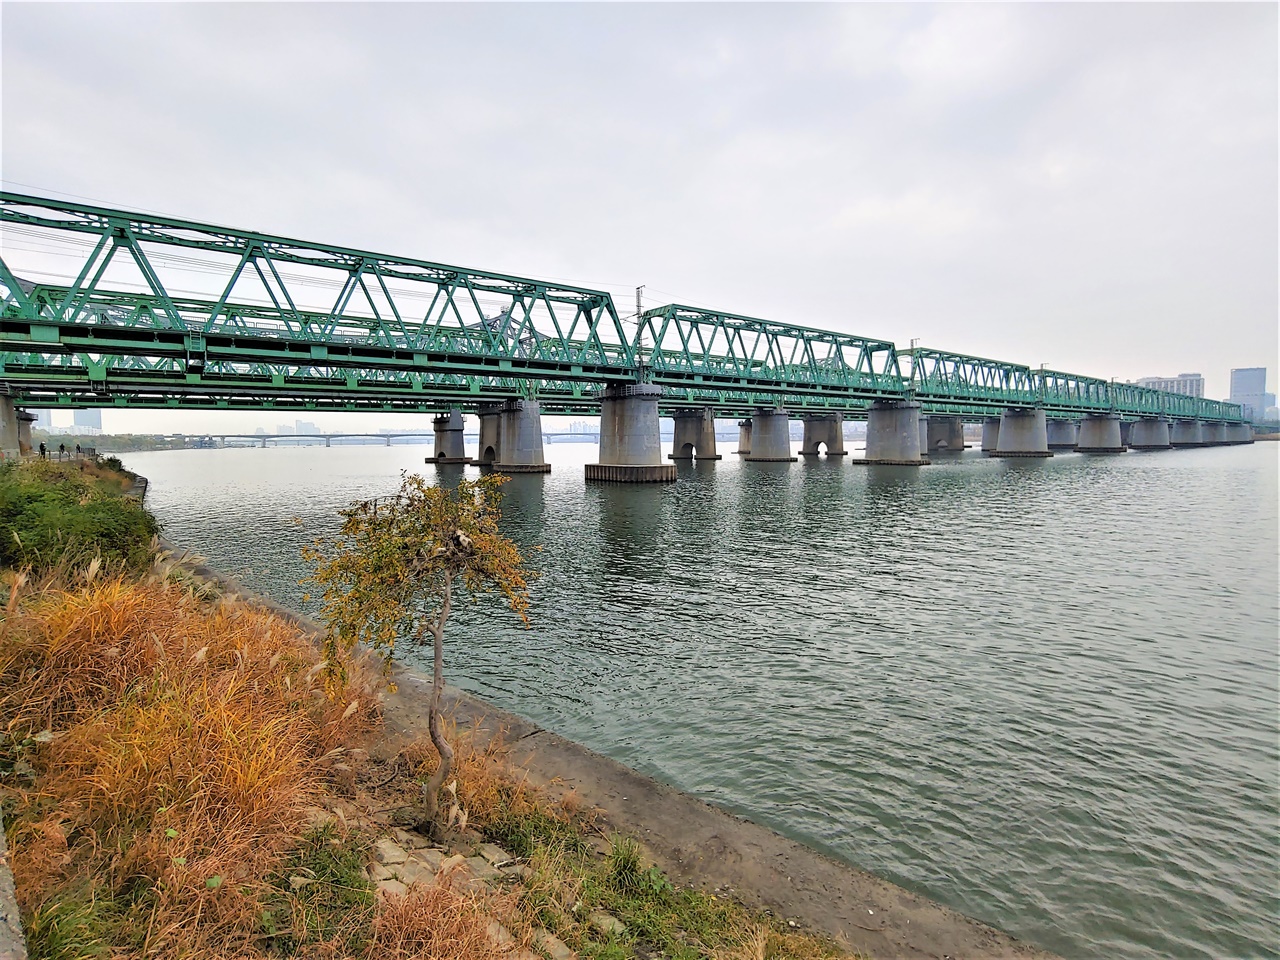 총 4개의 트러스교로 이뤄진 한강철교 모습이다. 서울역과 용산역을 지나는 모든 철도가 이 다리를 건너 한강 이남으로 뻗어 나간다. 서럽고 쓰린 우리 근현대사를 오롯하게 껴안고 있는 다리다.